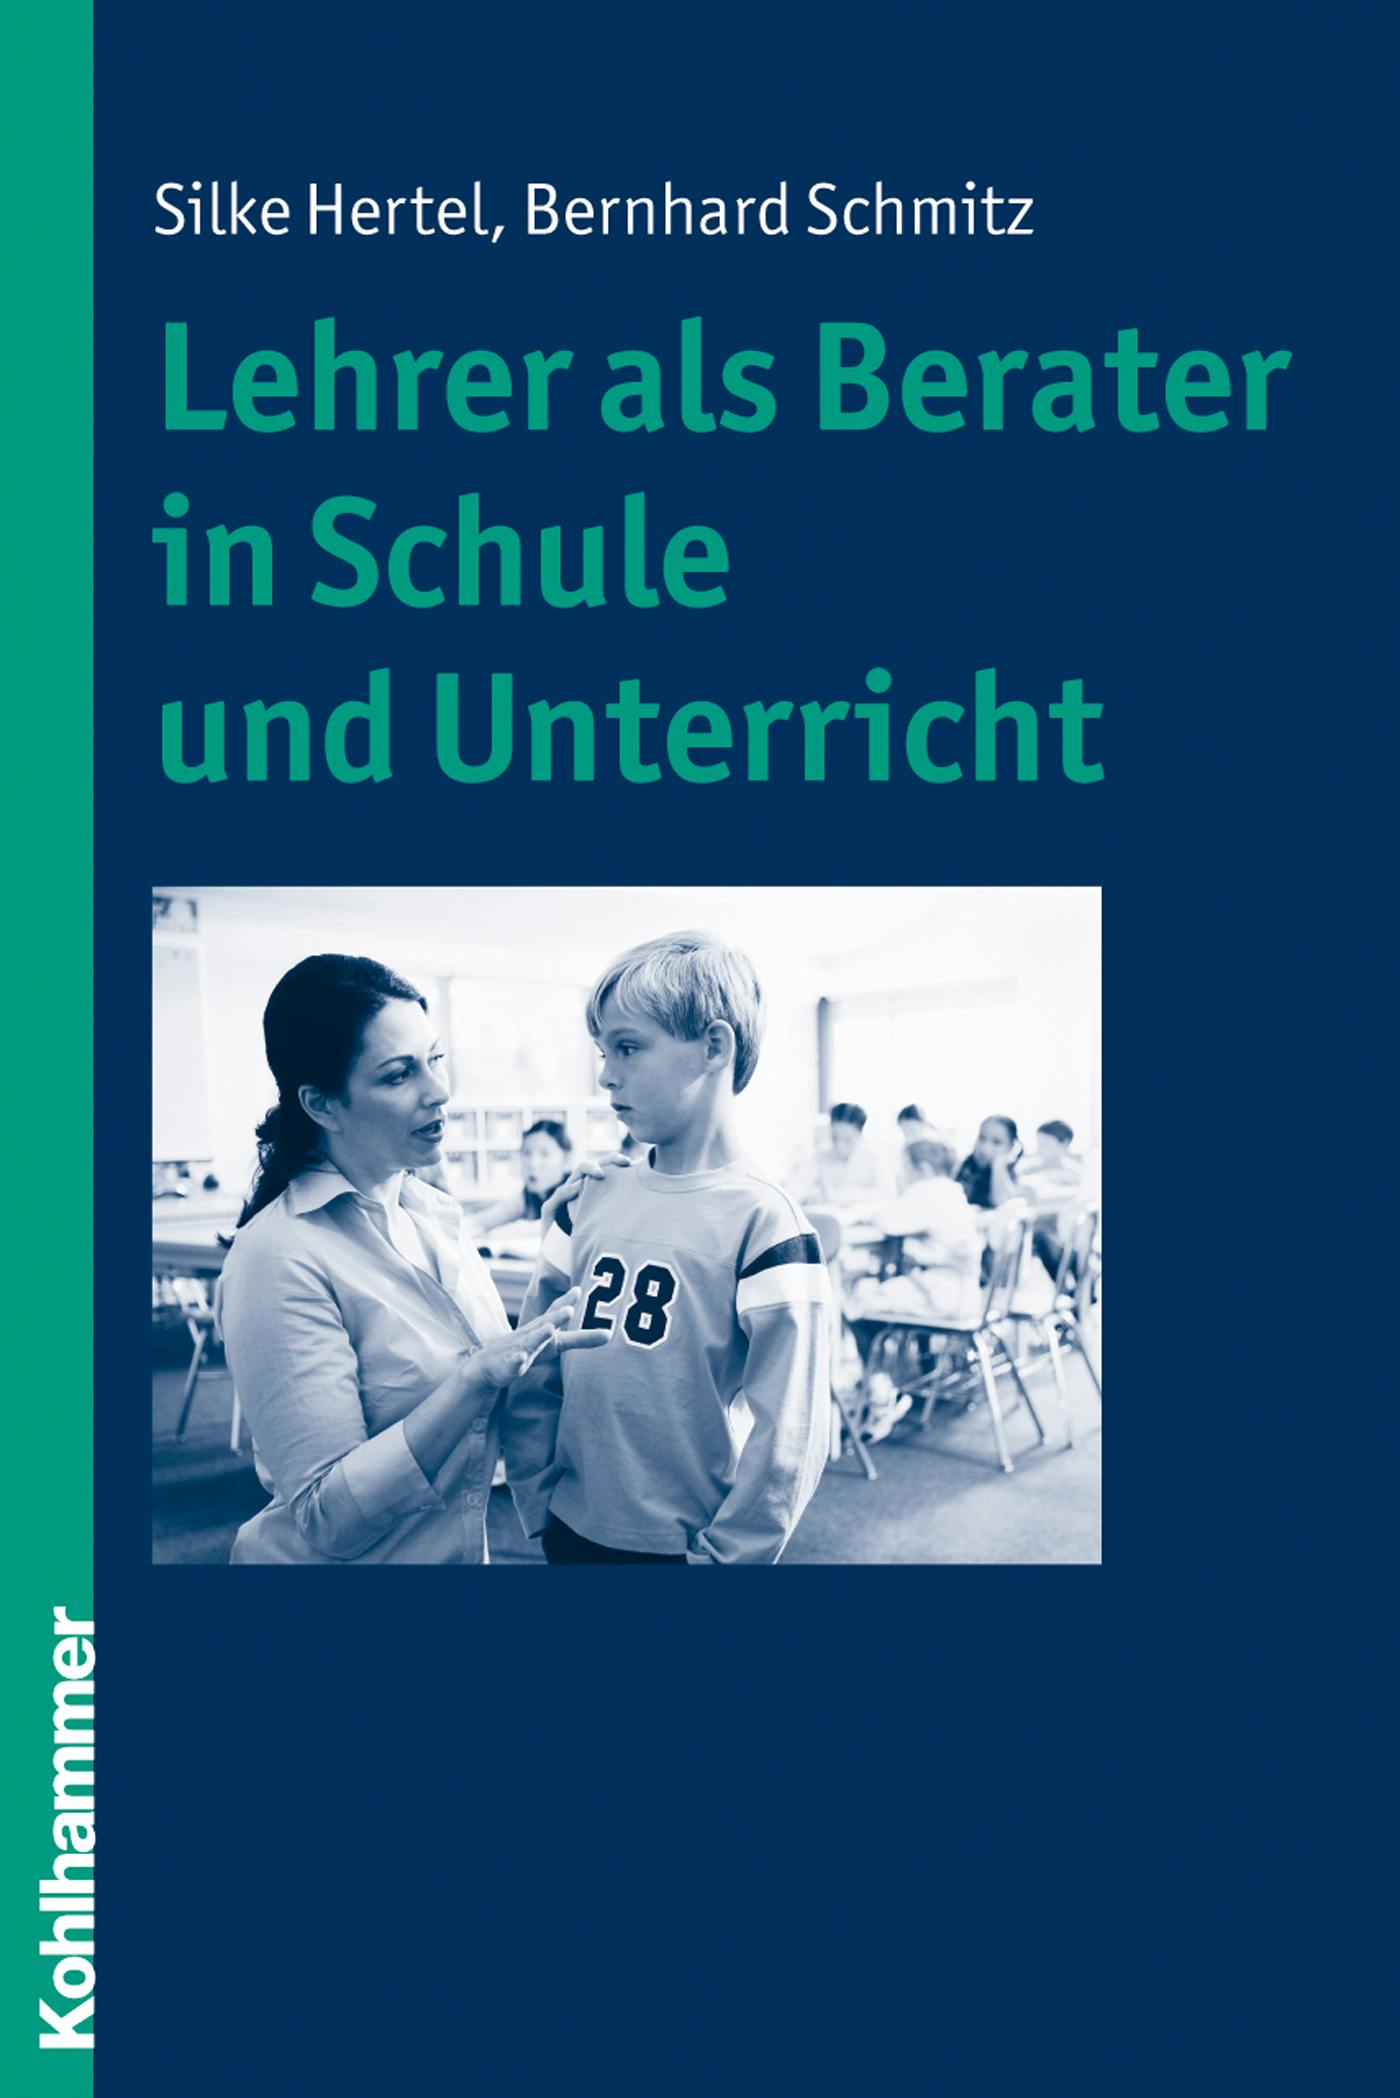 Lehrer als Berater in Schule und Unterricht - Bernhard Schmitz, Silke Hertel